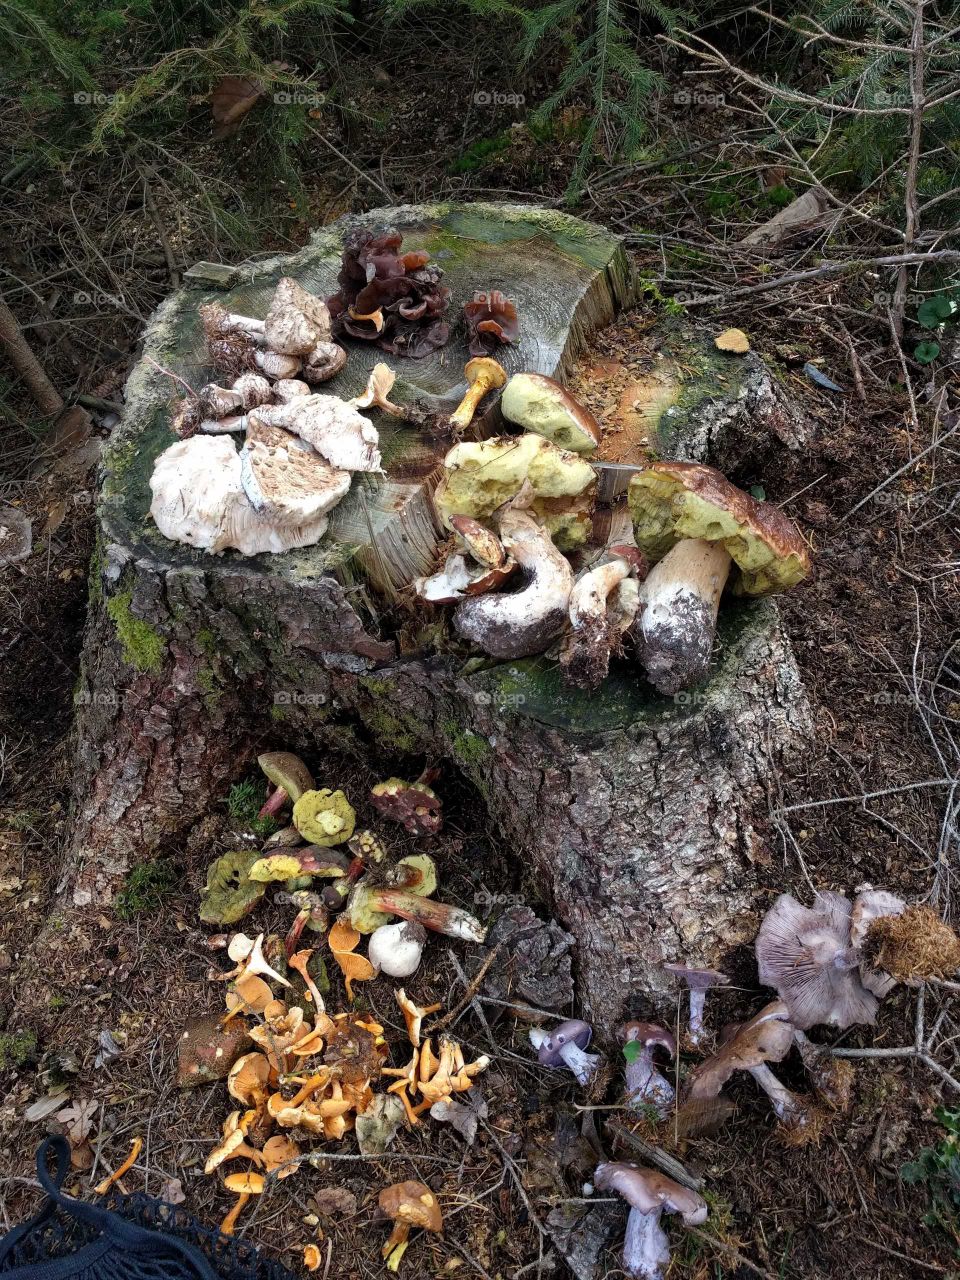 Mushroom bounty in the Czech republic